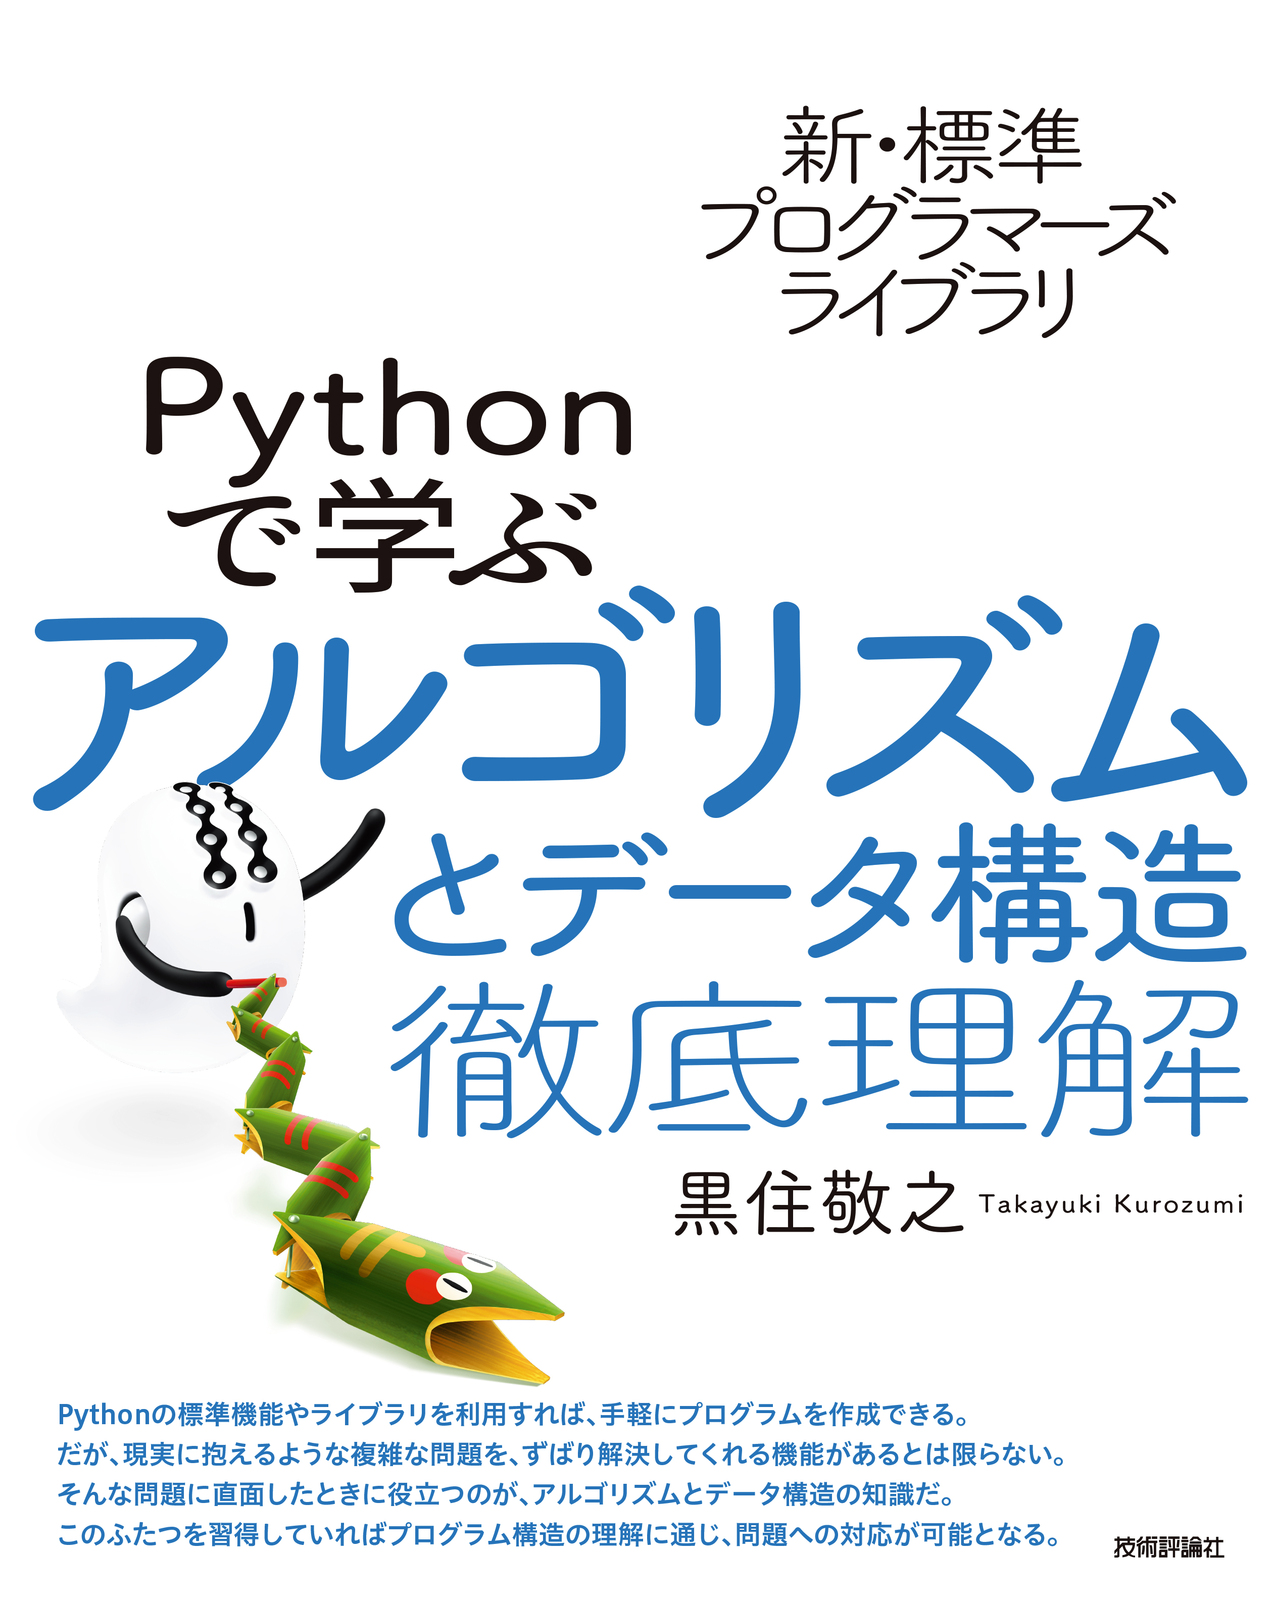 新・標準プログラマーズライブラリ Pythonで学ぶアルゴリズムとデータ構造 徹底理解